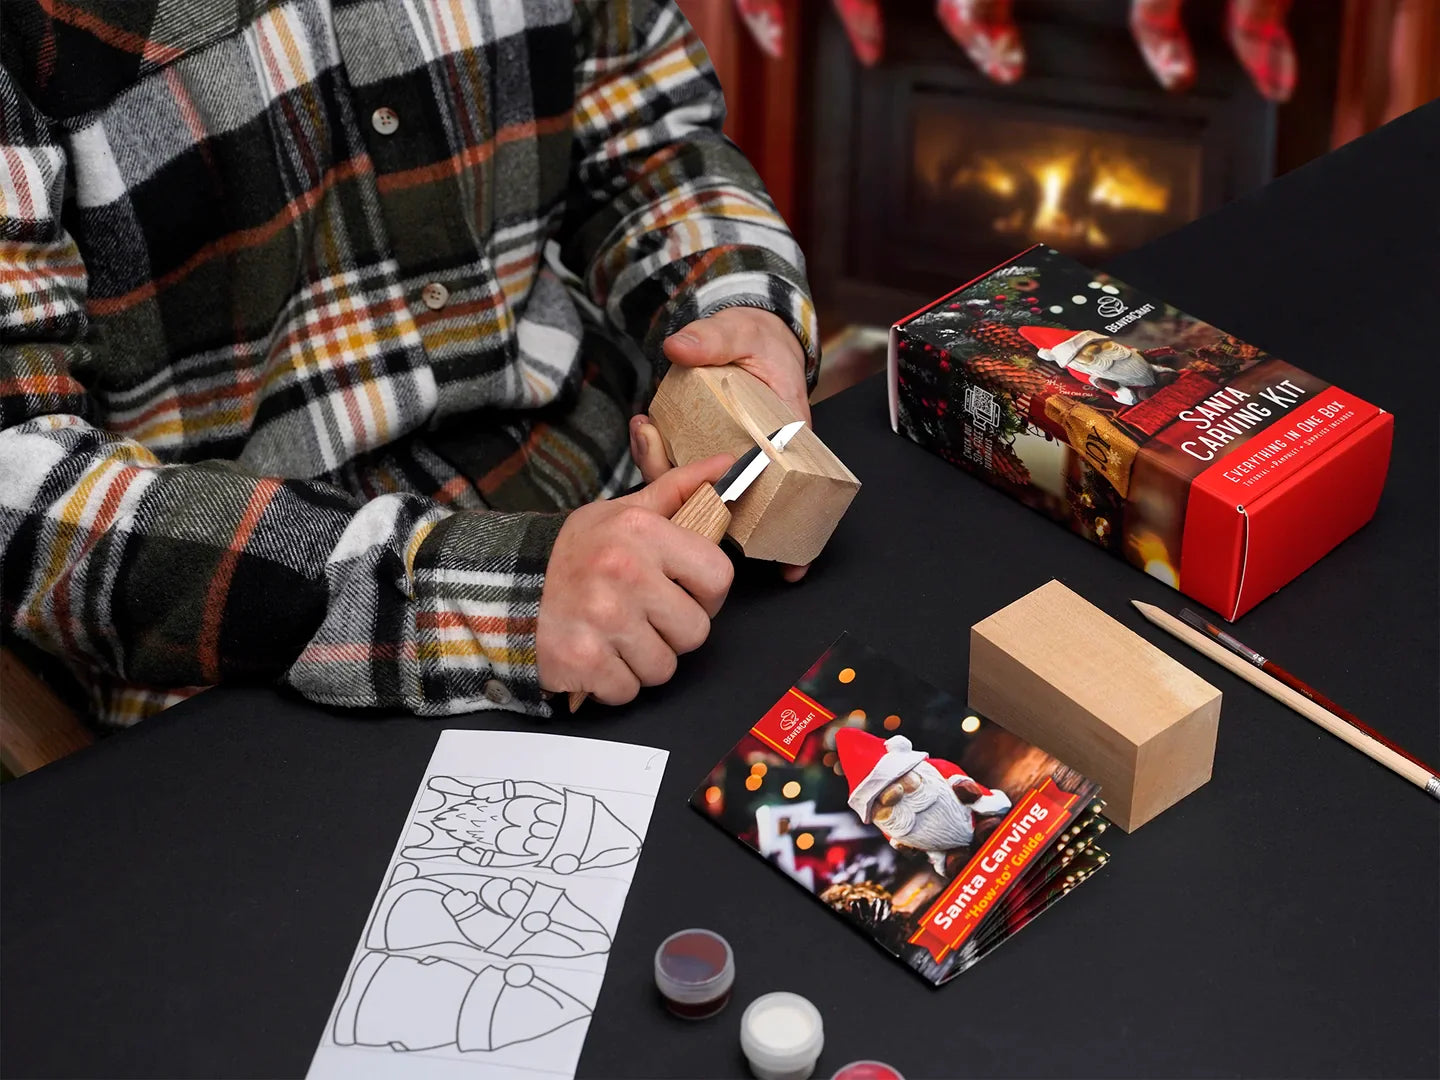 BeaverCraft DIY06 Santa Wood Carving Hobby Kit - Complete Starter Whittling Kit for Beginners, Adults, Teens, and Kids